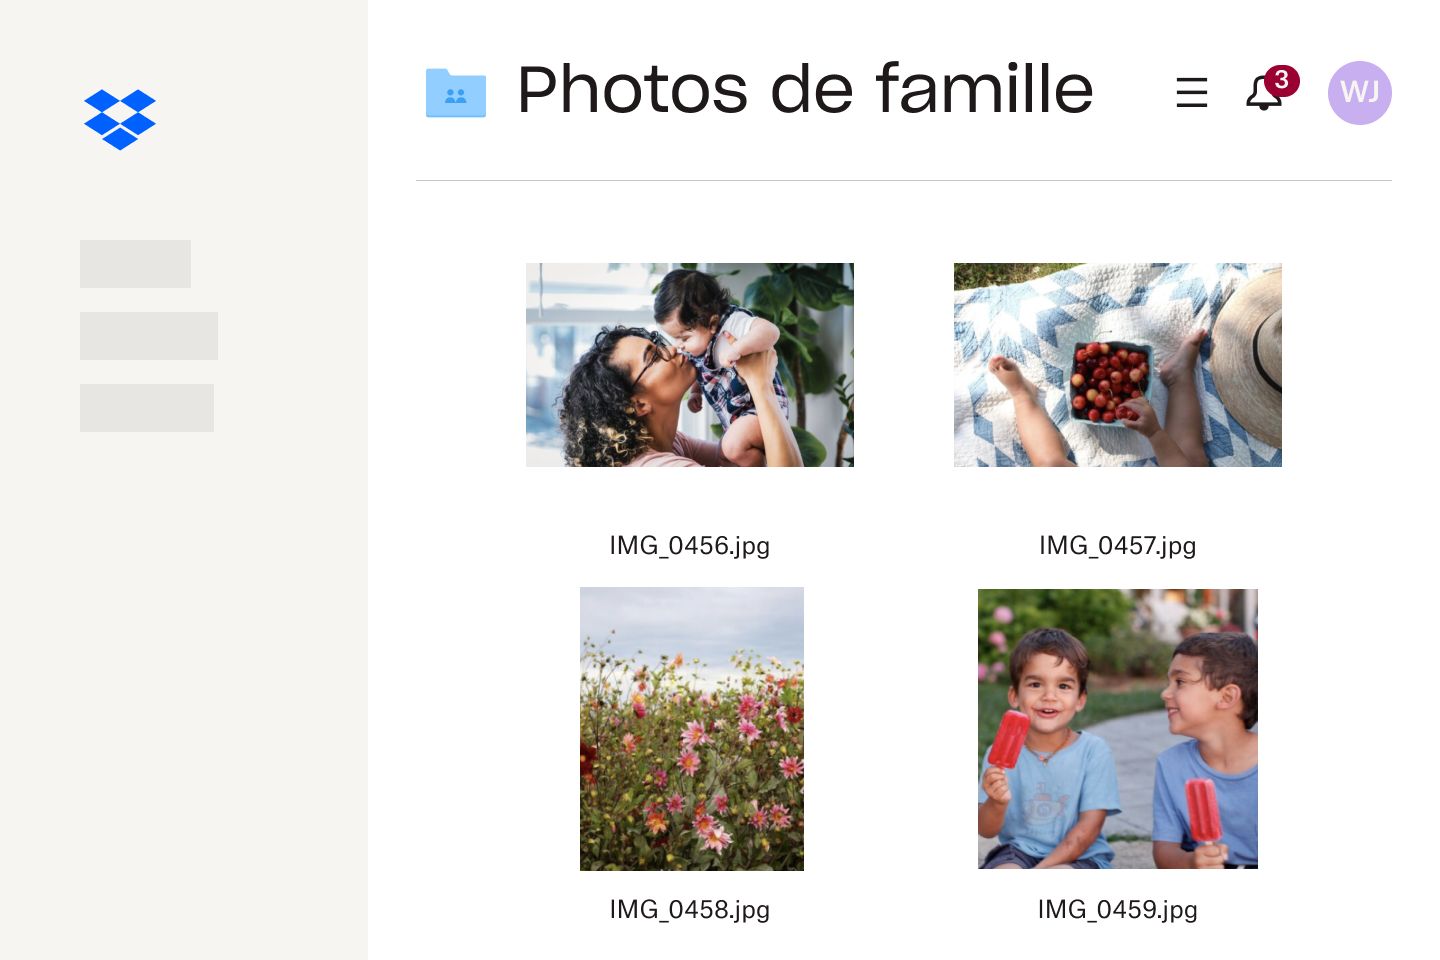 Une collection de photos enregistrées dans un dossier Dropbox appelé &quot;Photos de famille&quot;